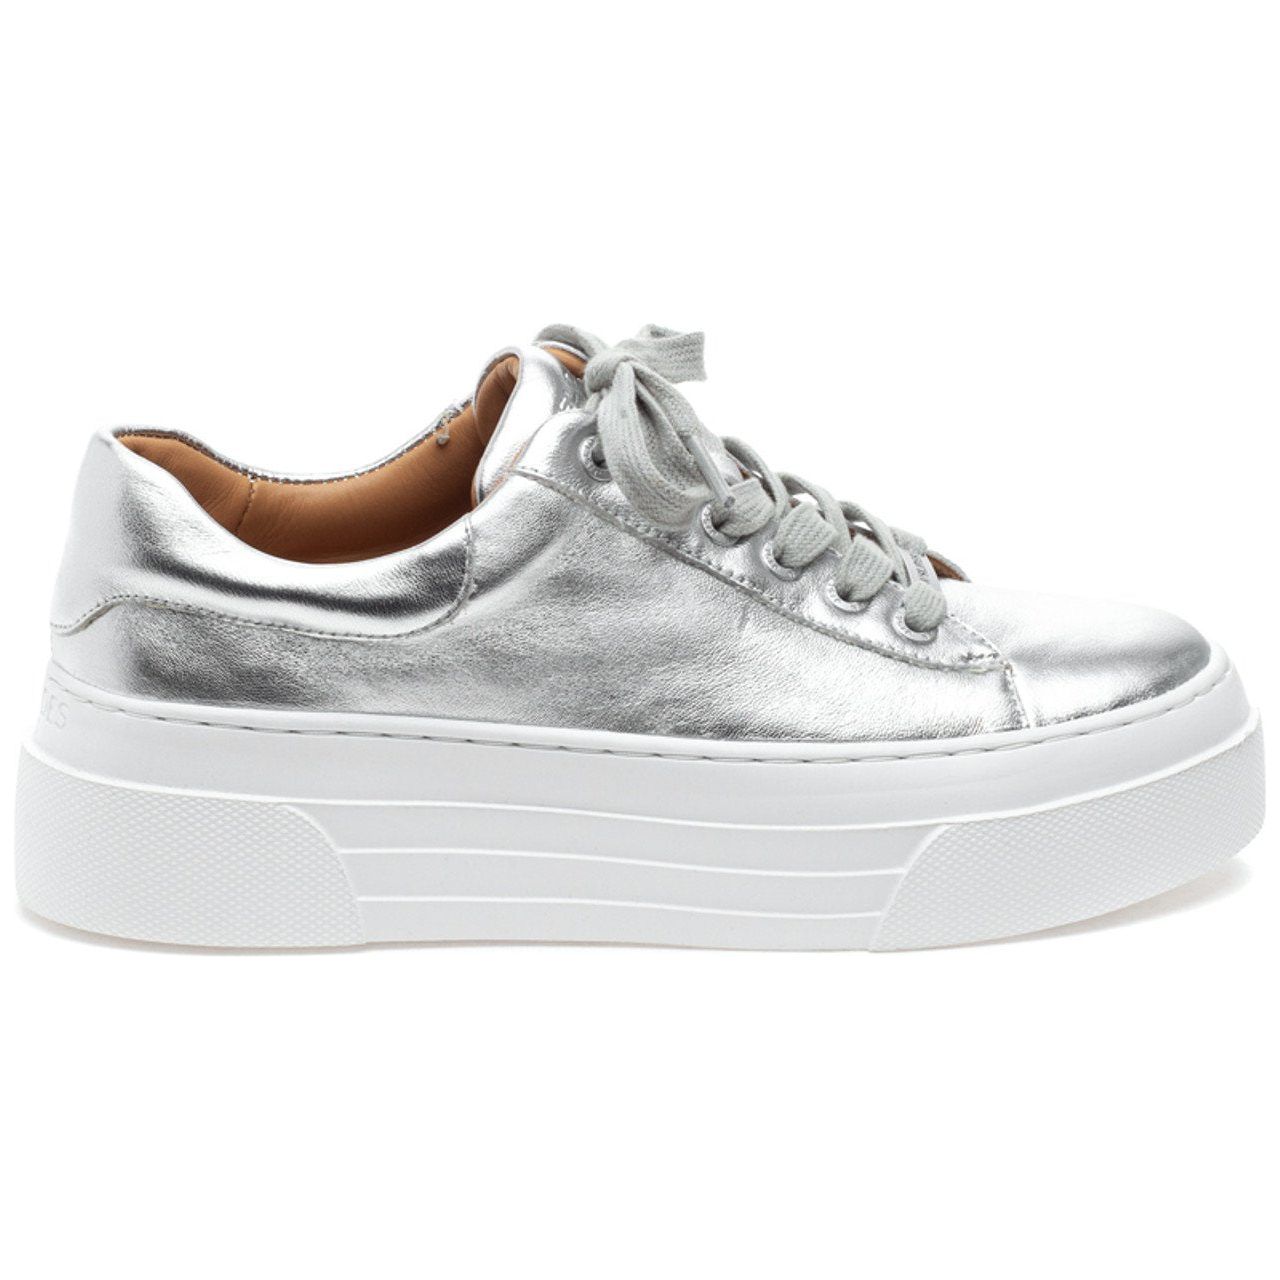 J Slides - Amanda Sneaker in Silver-SQ4110581